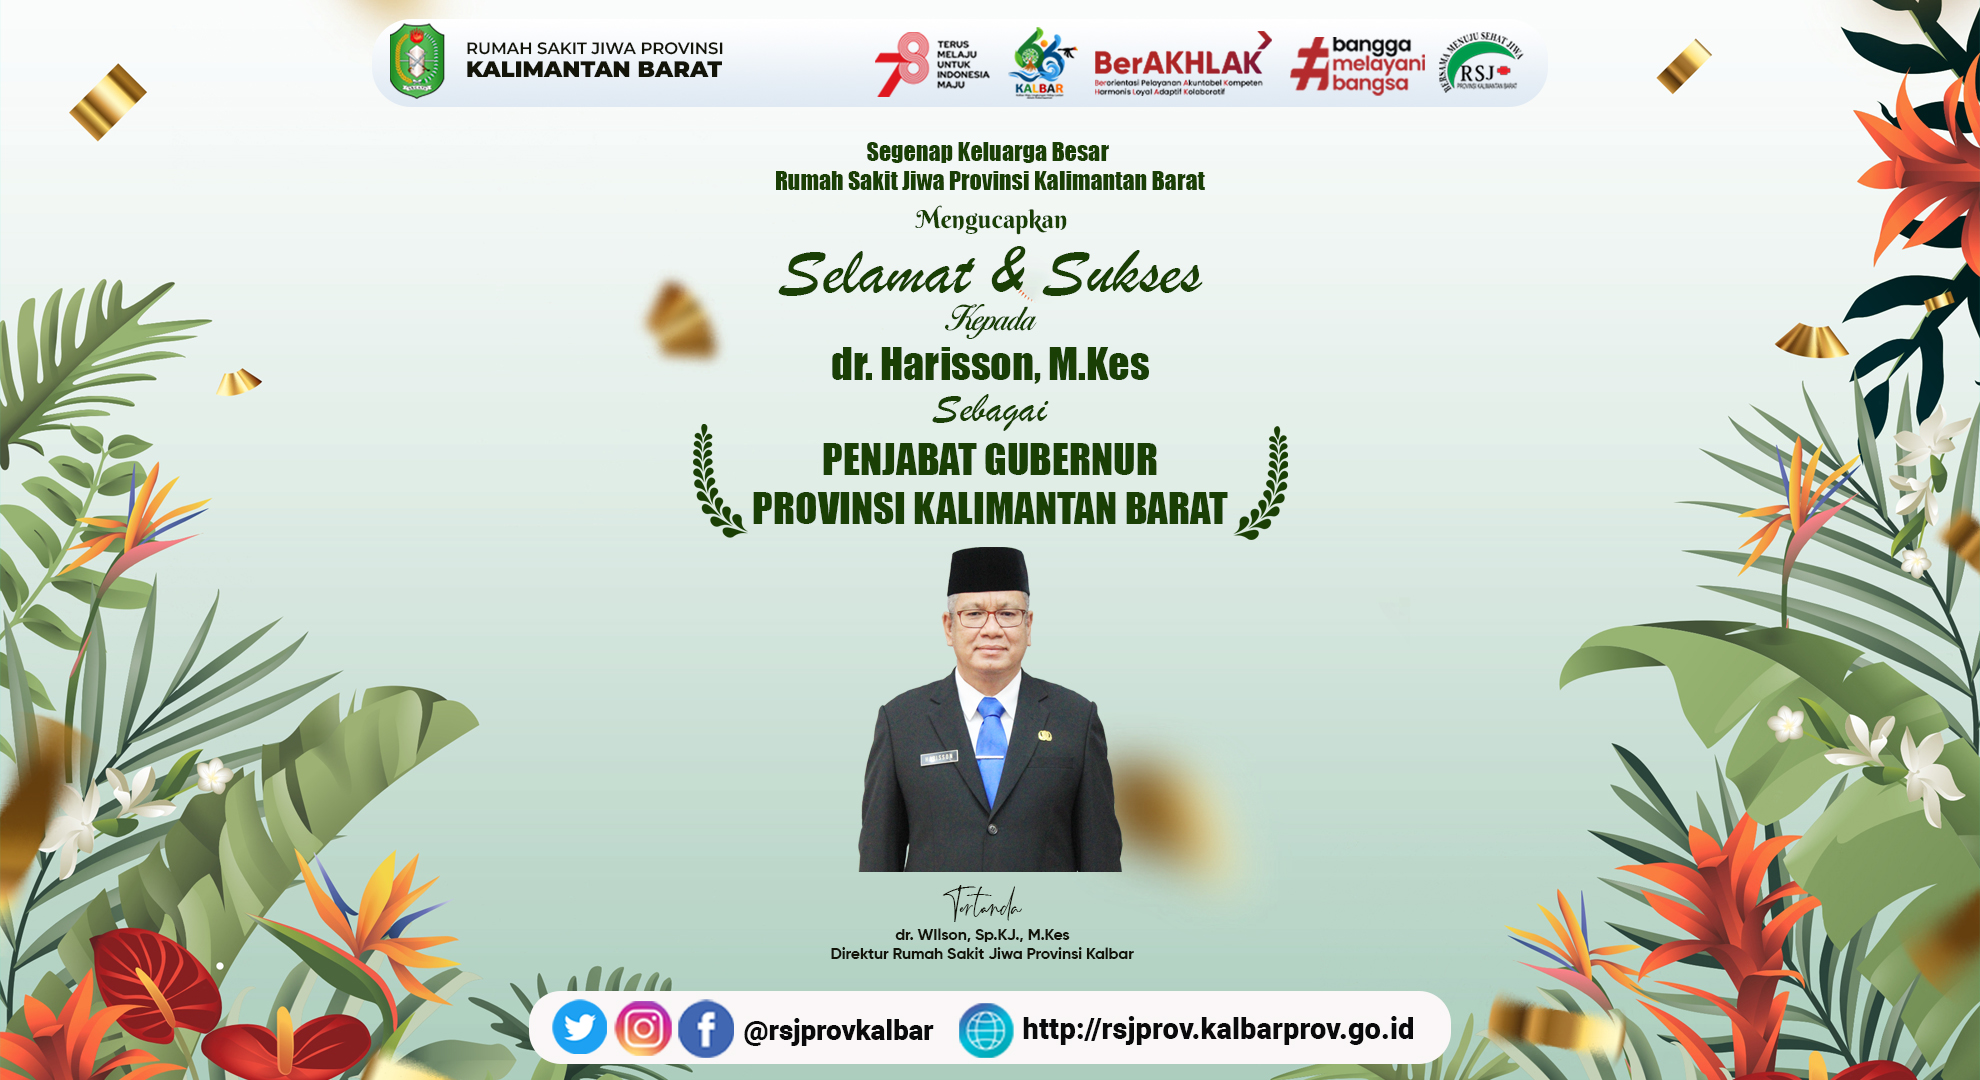 Selamat dan Sukses Kepada Bapak dr.  Harisson, M.Kes atas Pelantikan dan Pengambilan Sumpah Sebagai Penjabat Gubernur Kalimantan Barat